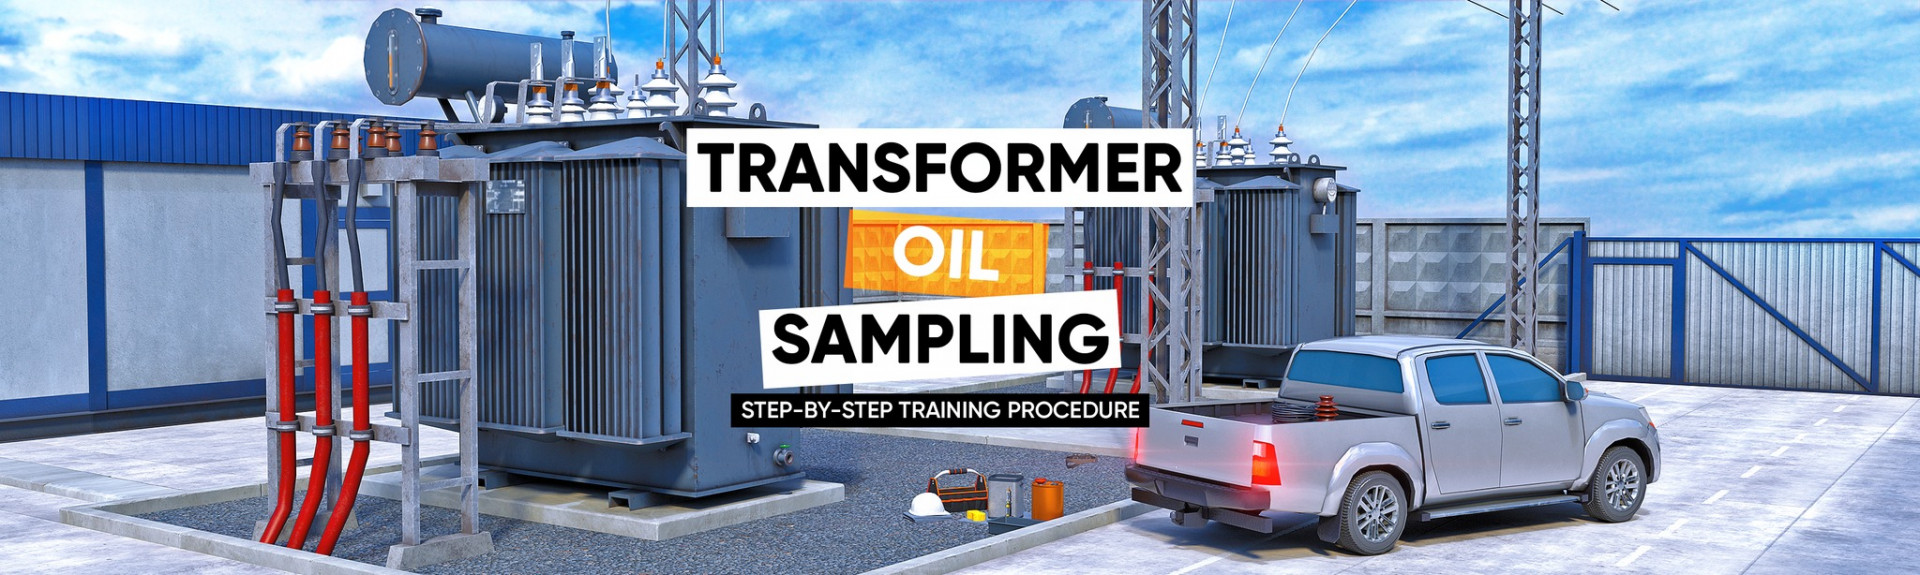 Transformer Oil Sampling VR Training